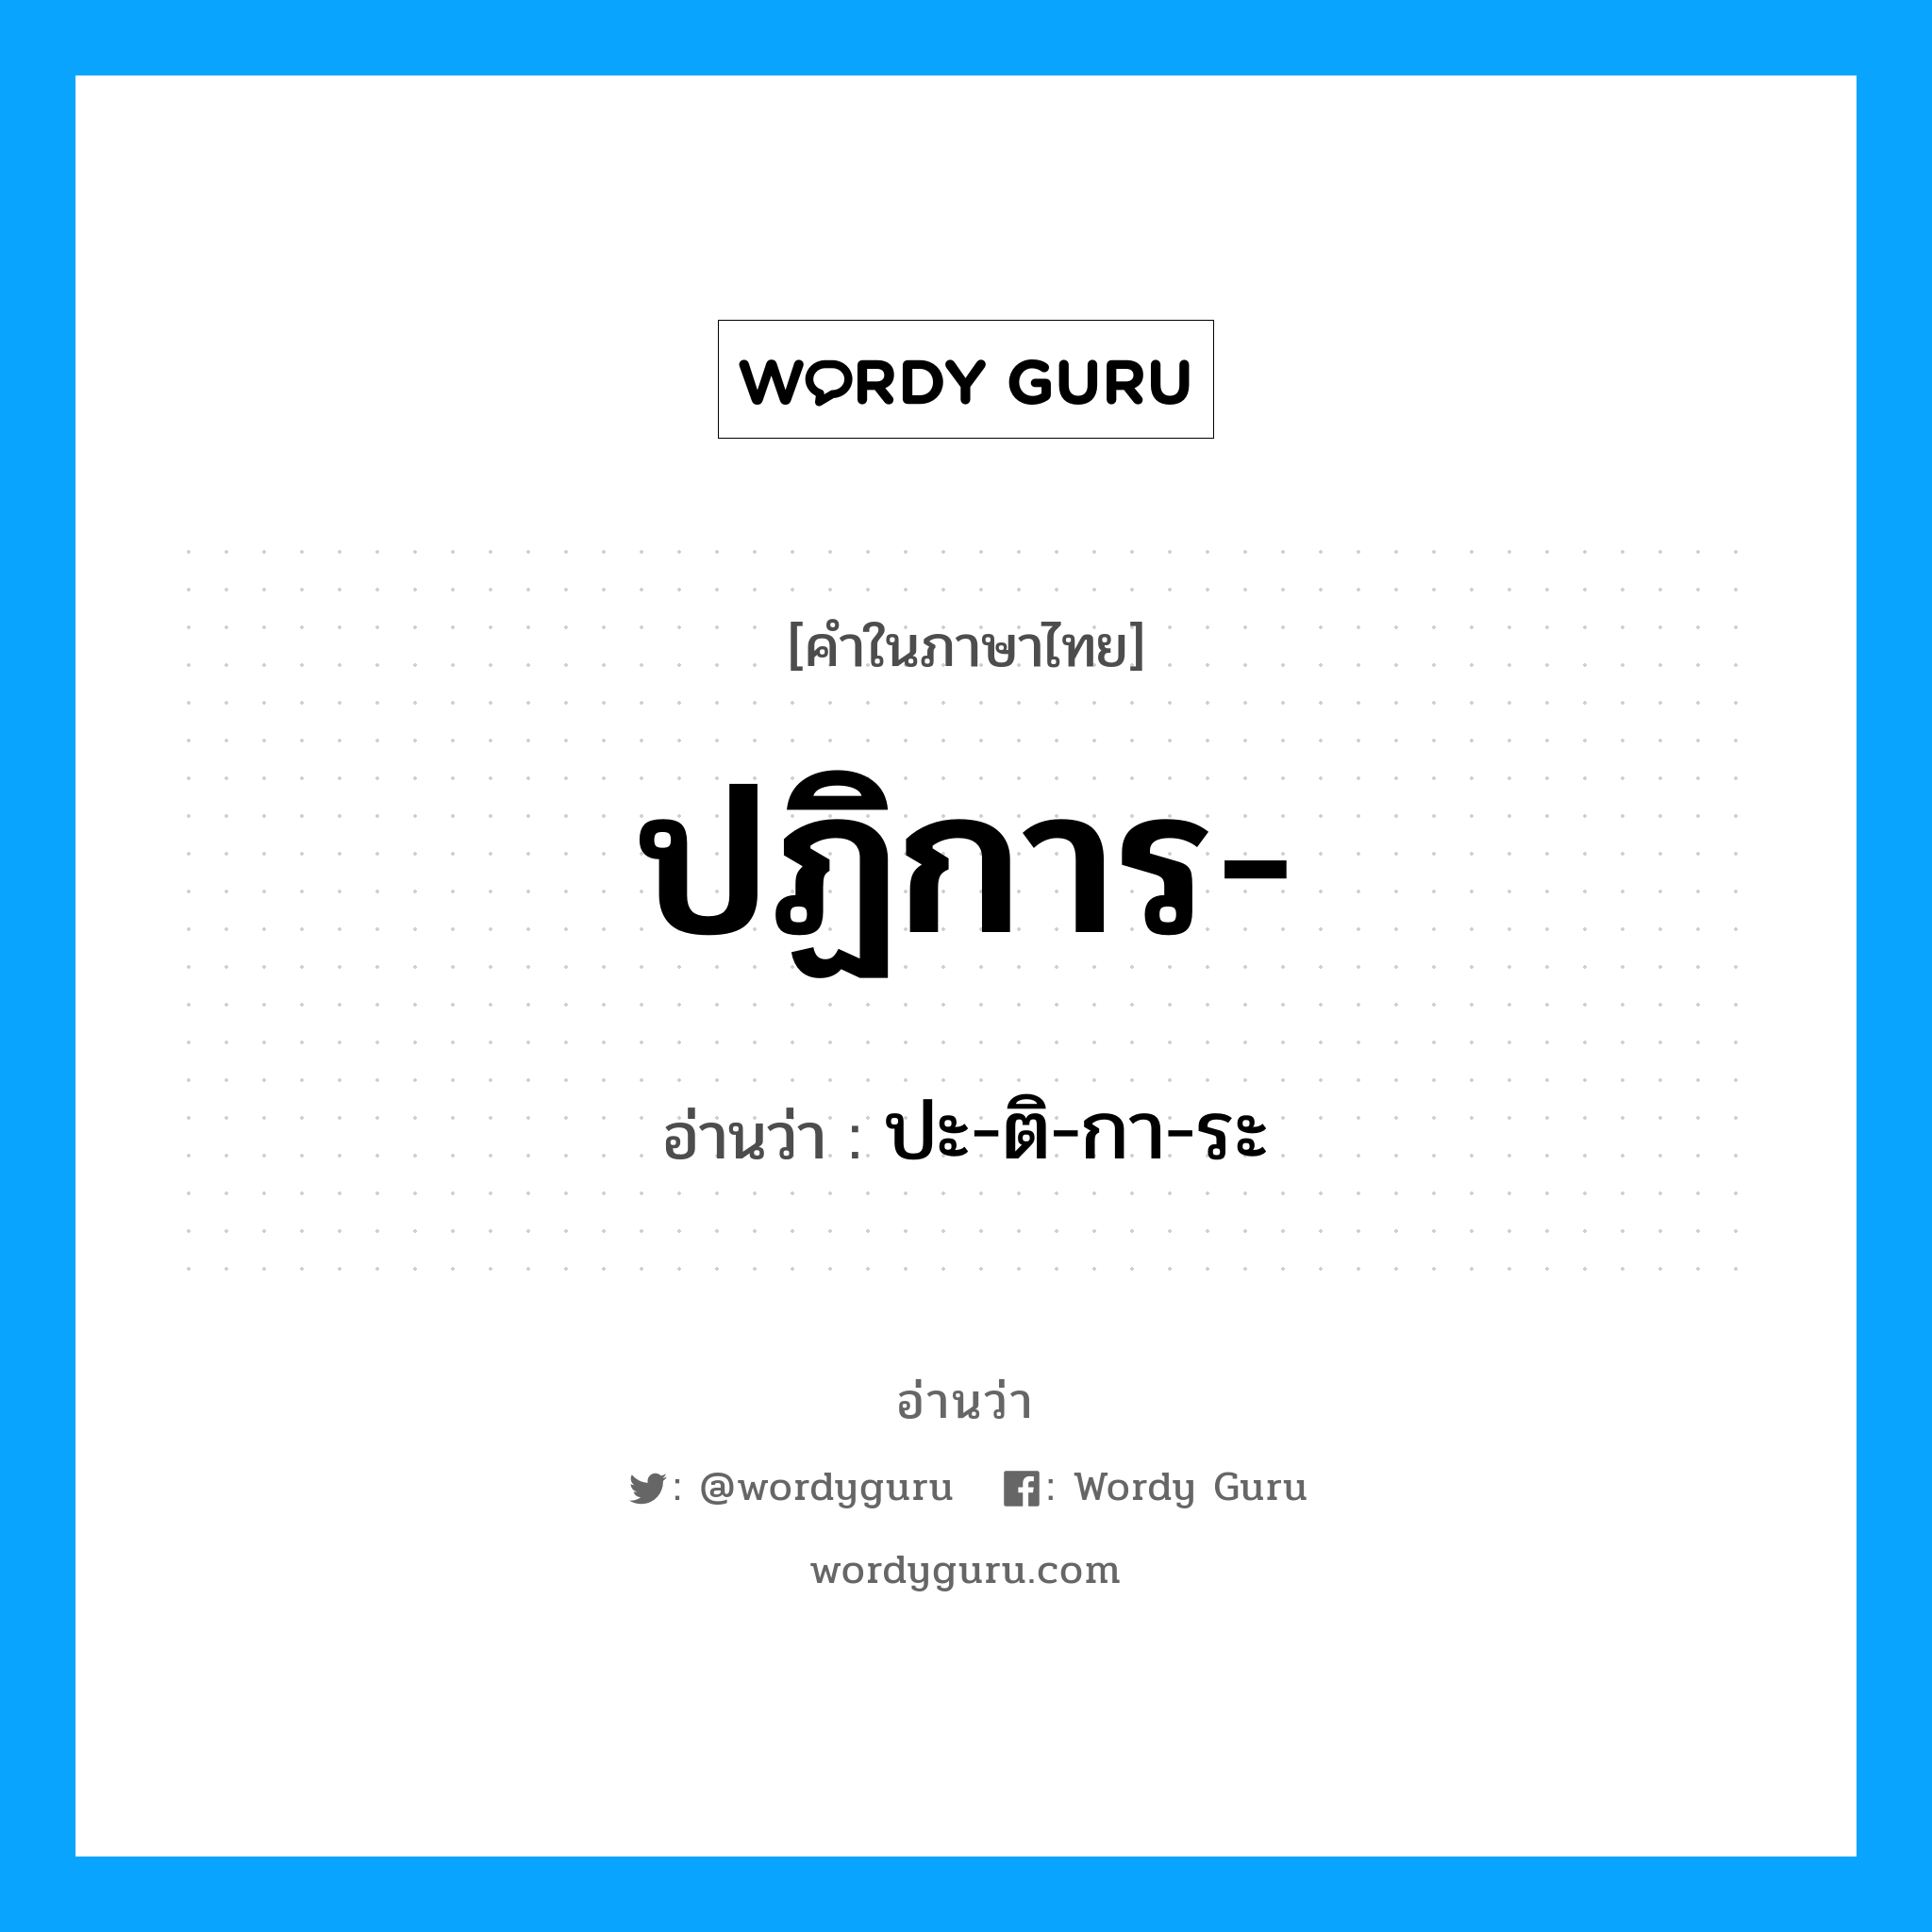 ปะ-ติ-กา-ระ เป็นคำอ่านของคำไหน?, คำในภาษาไทย ปะ-ติ-กา-ระ อ่านว่า ปฏิการ-